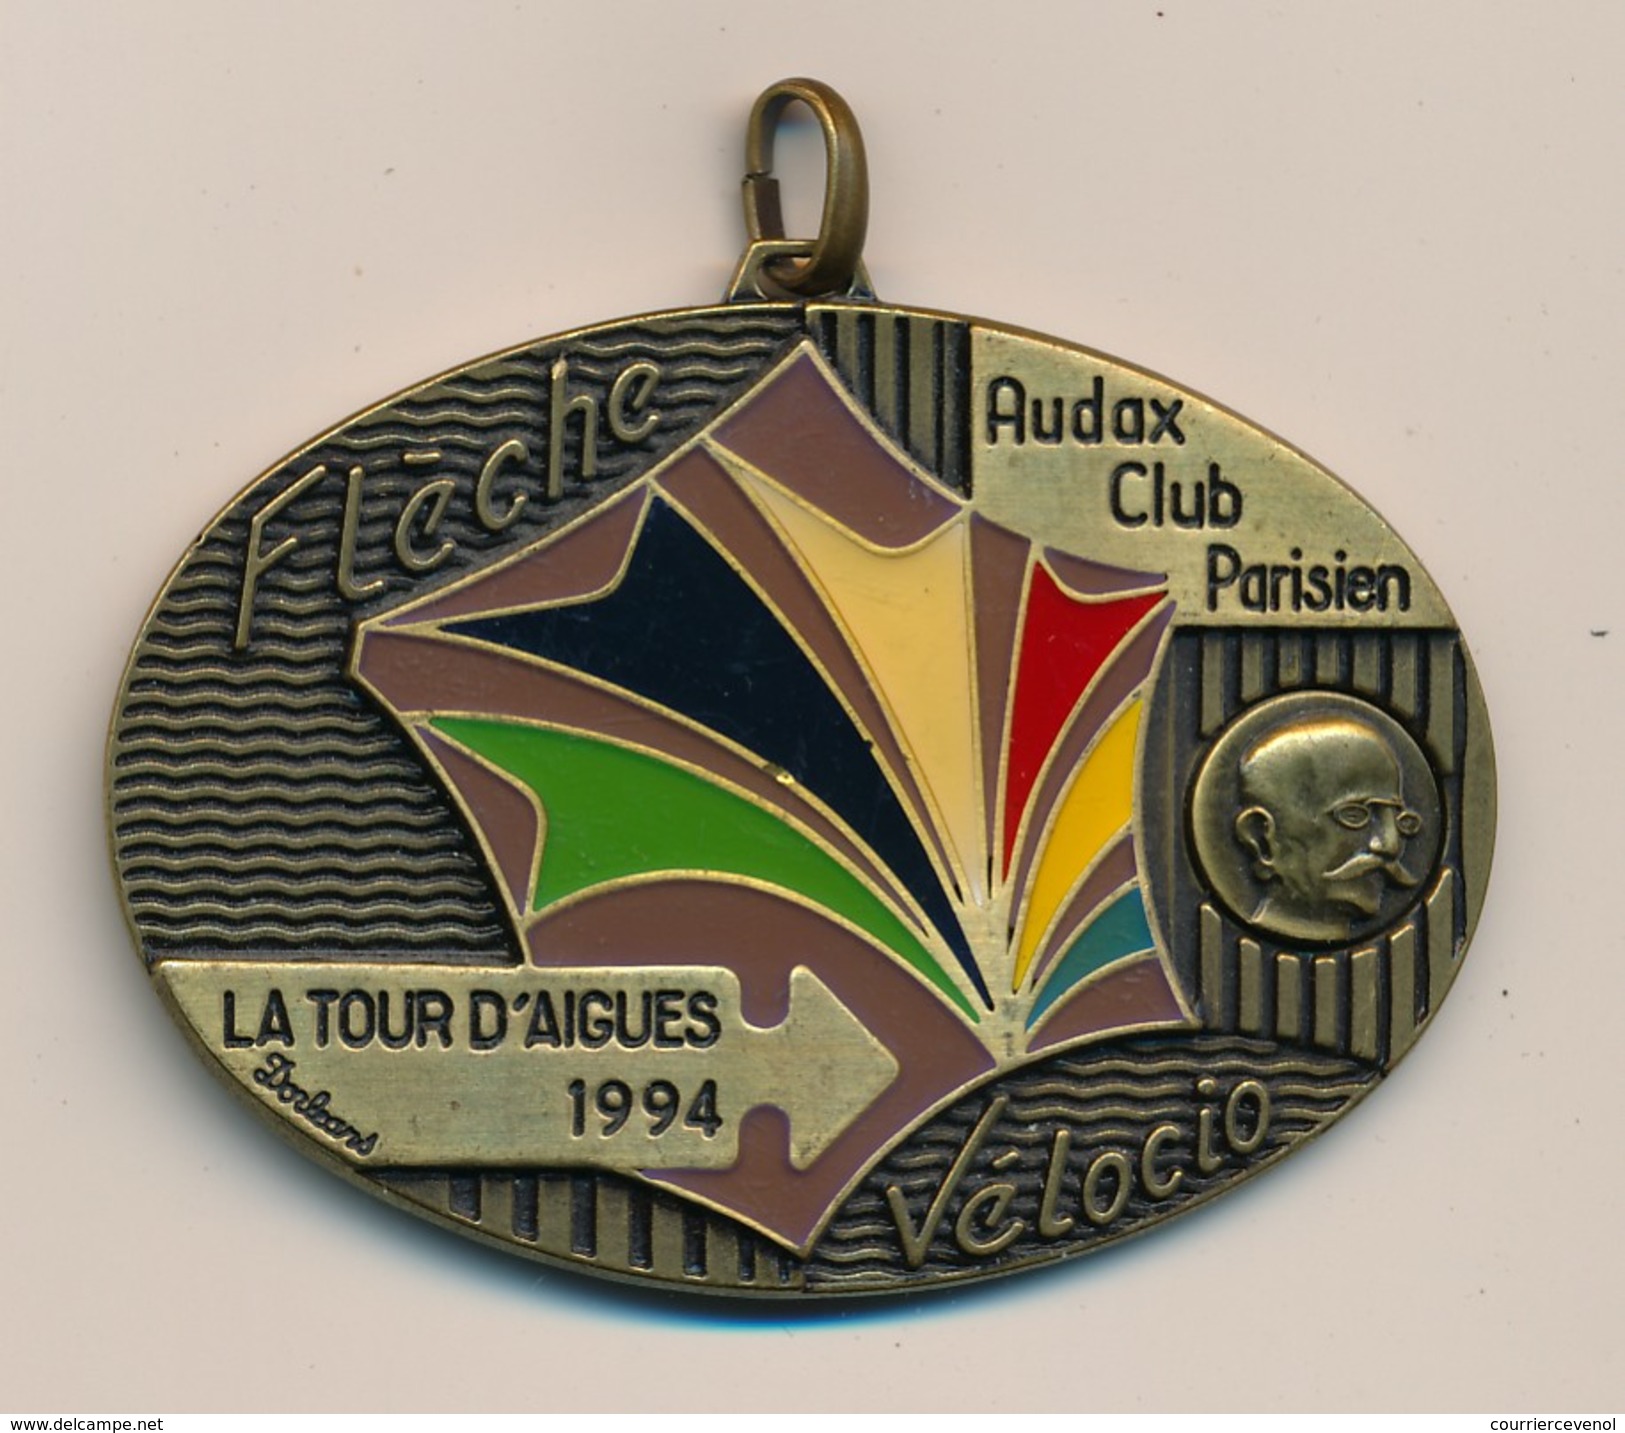 Médaille "Flèche Vélocio - La Tour D'Aigues 1994" - AUDAX CLUB PARISIEN - (Cyclotourisme) - Cyclisme